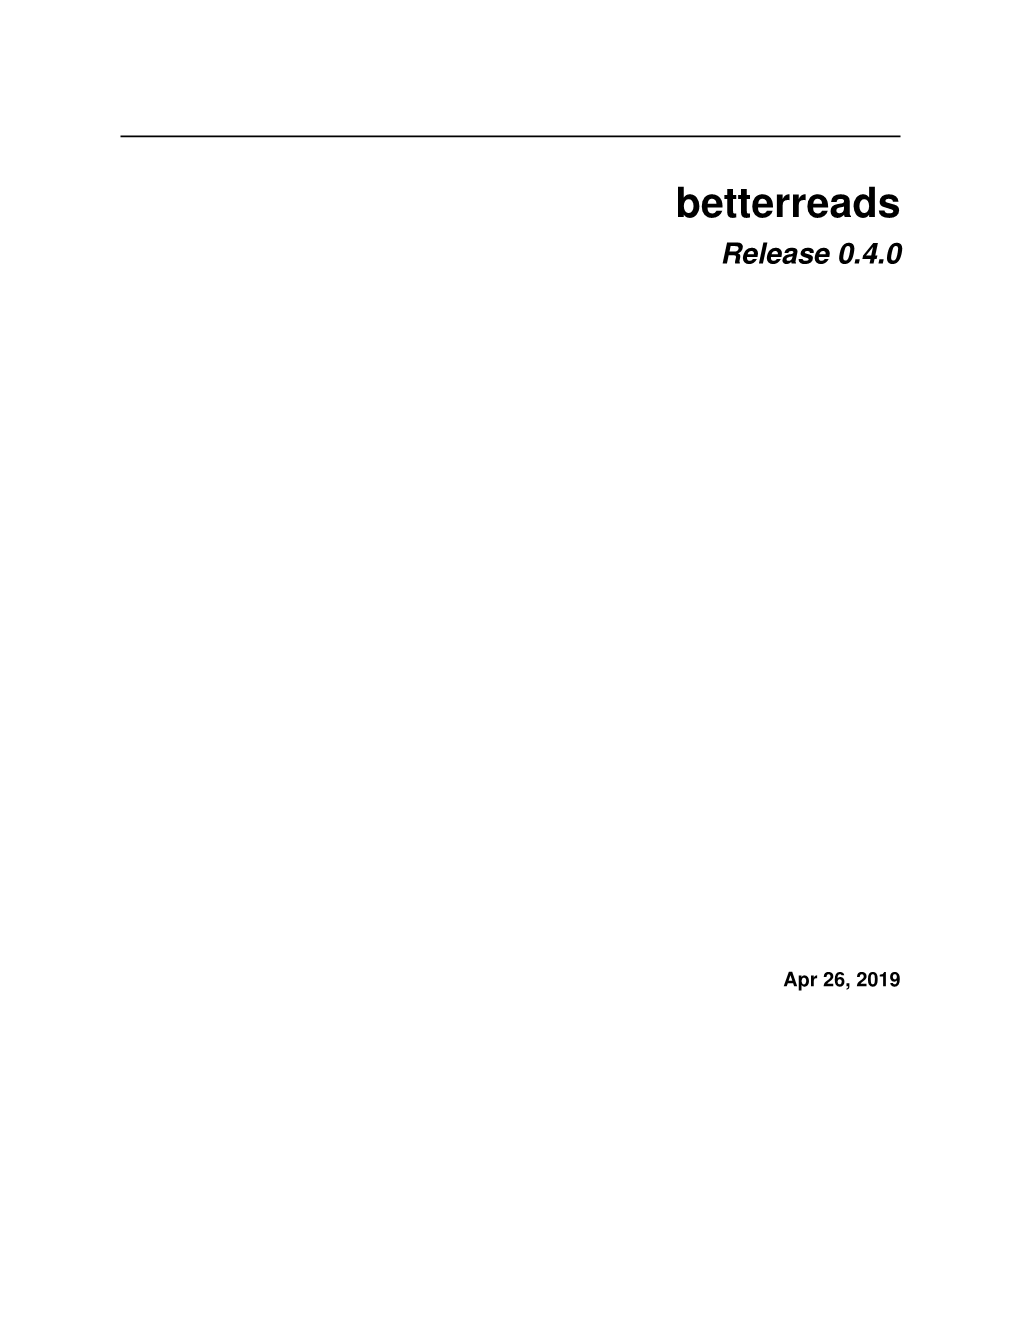 Betterreads Release 0.4.0